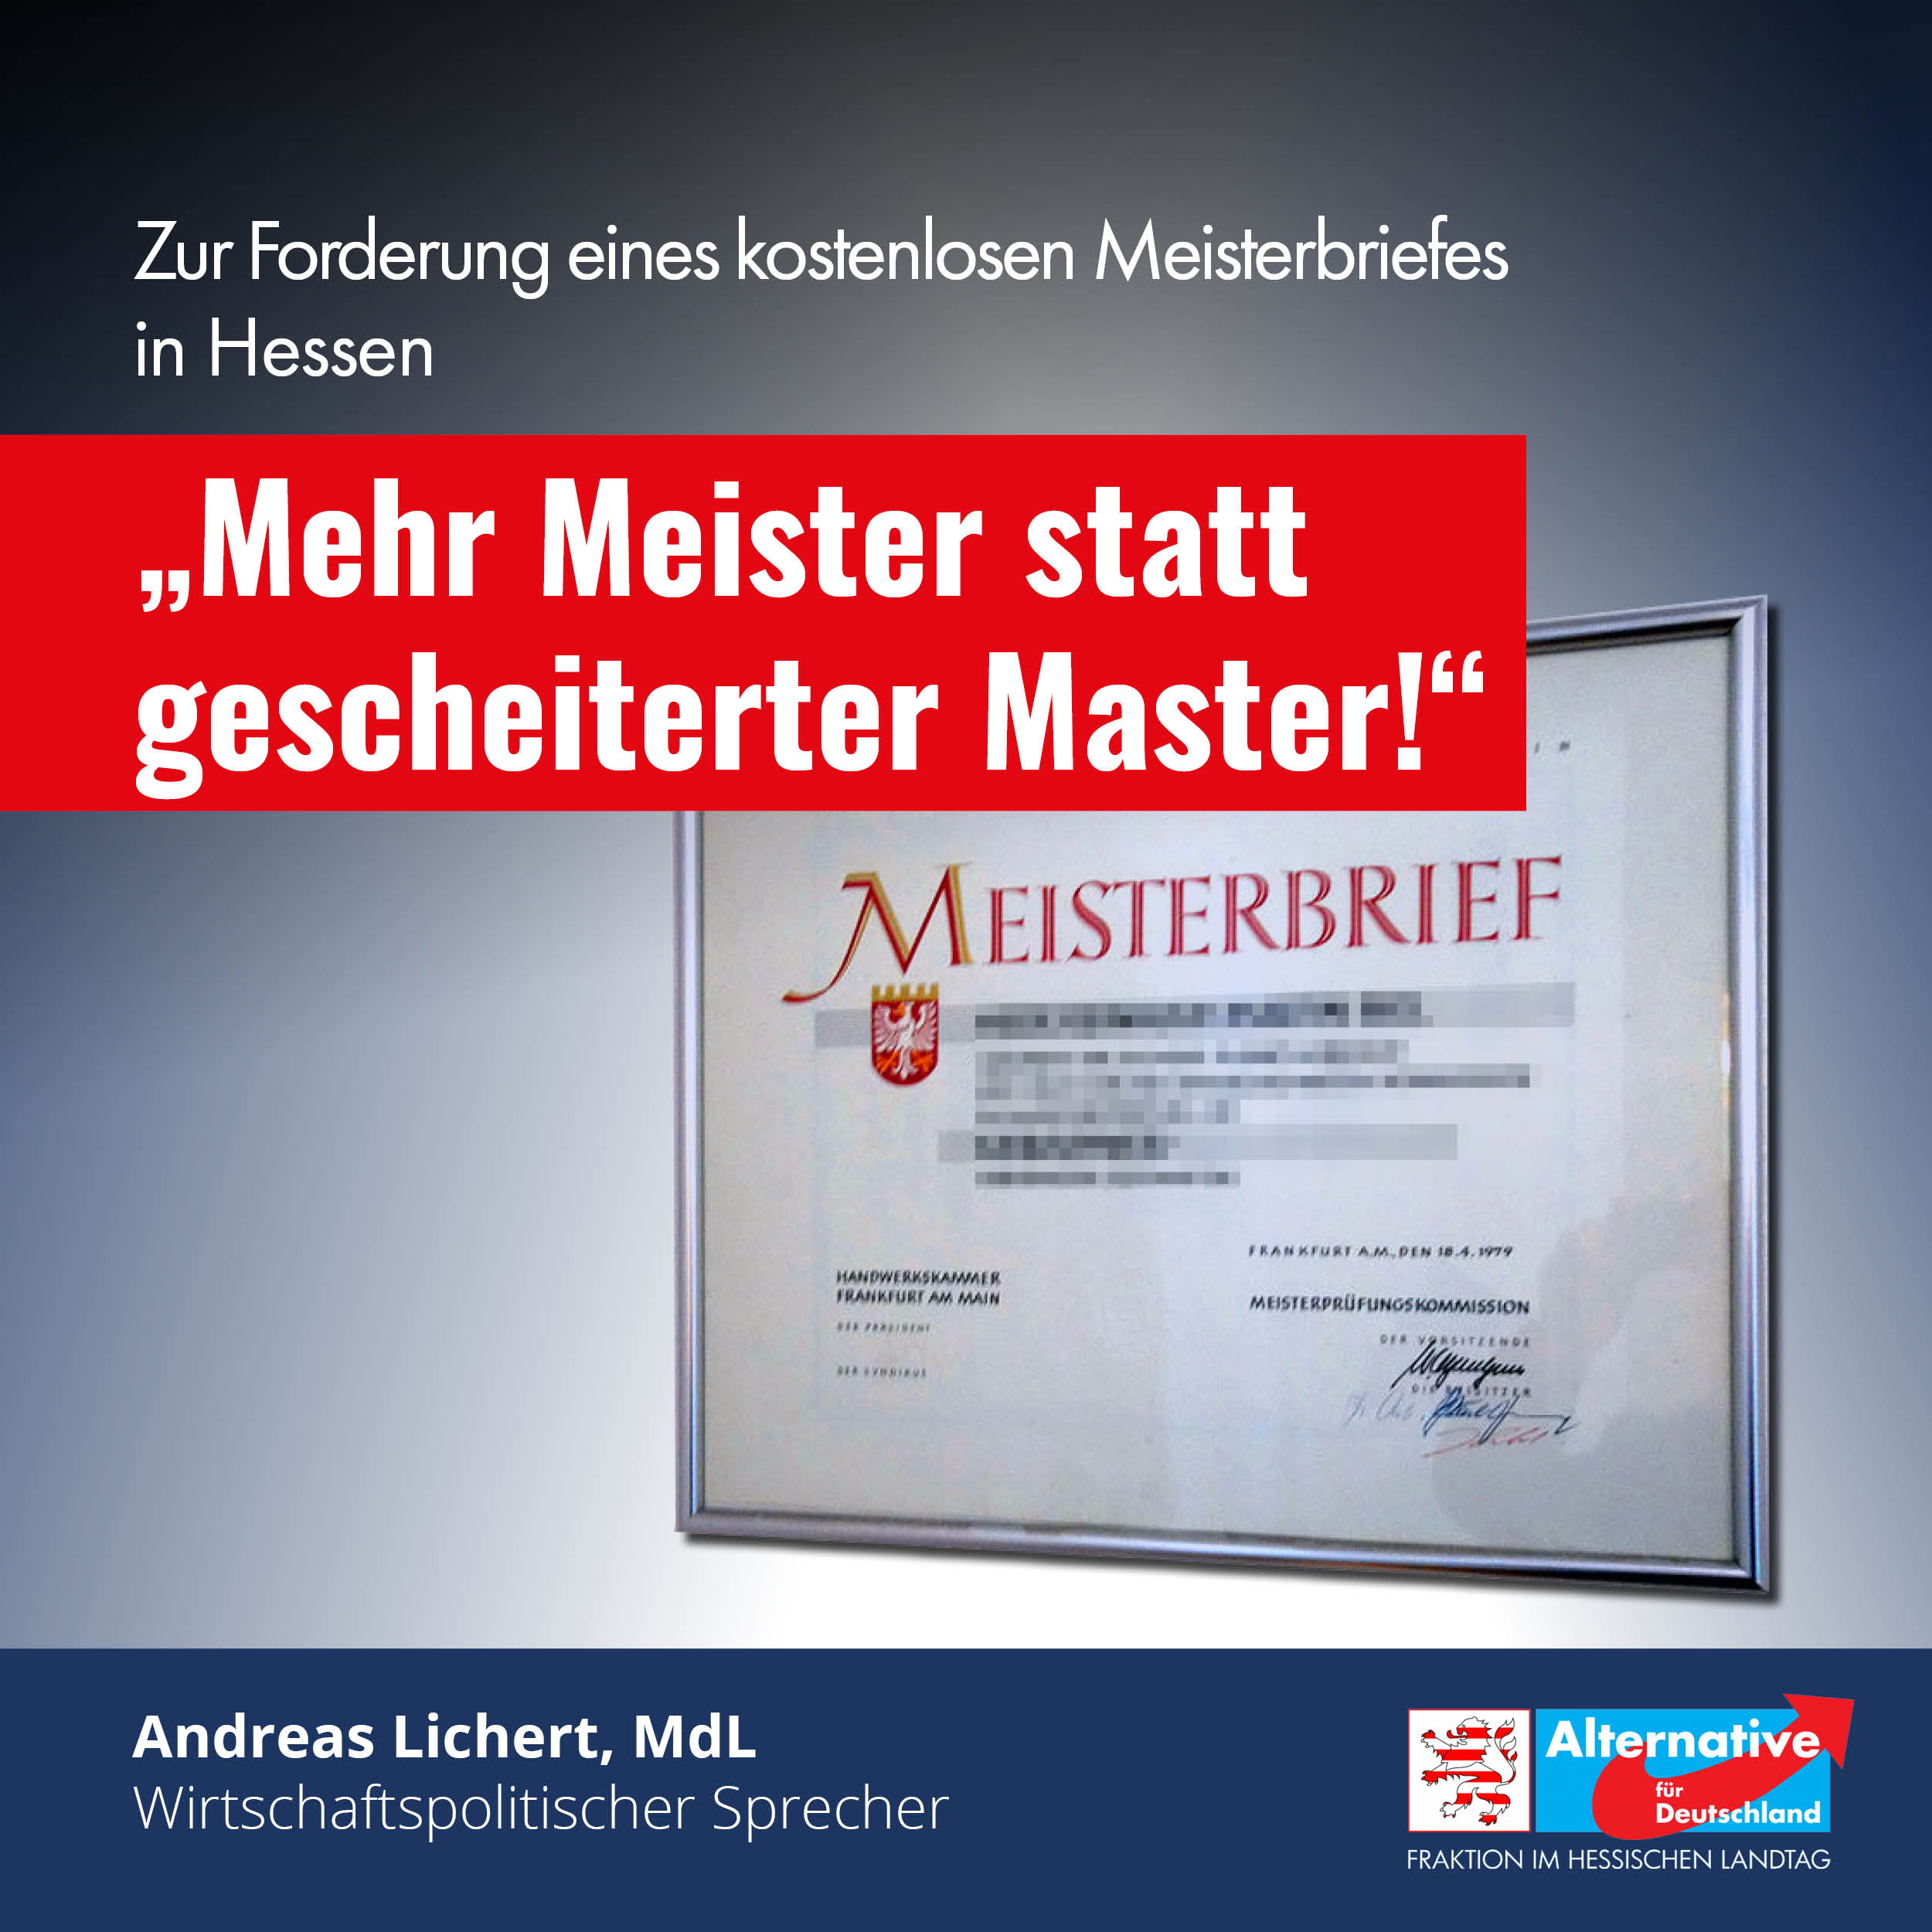 You are currently viewing Mehr Meister statt gescheiterter Master!